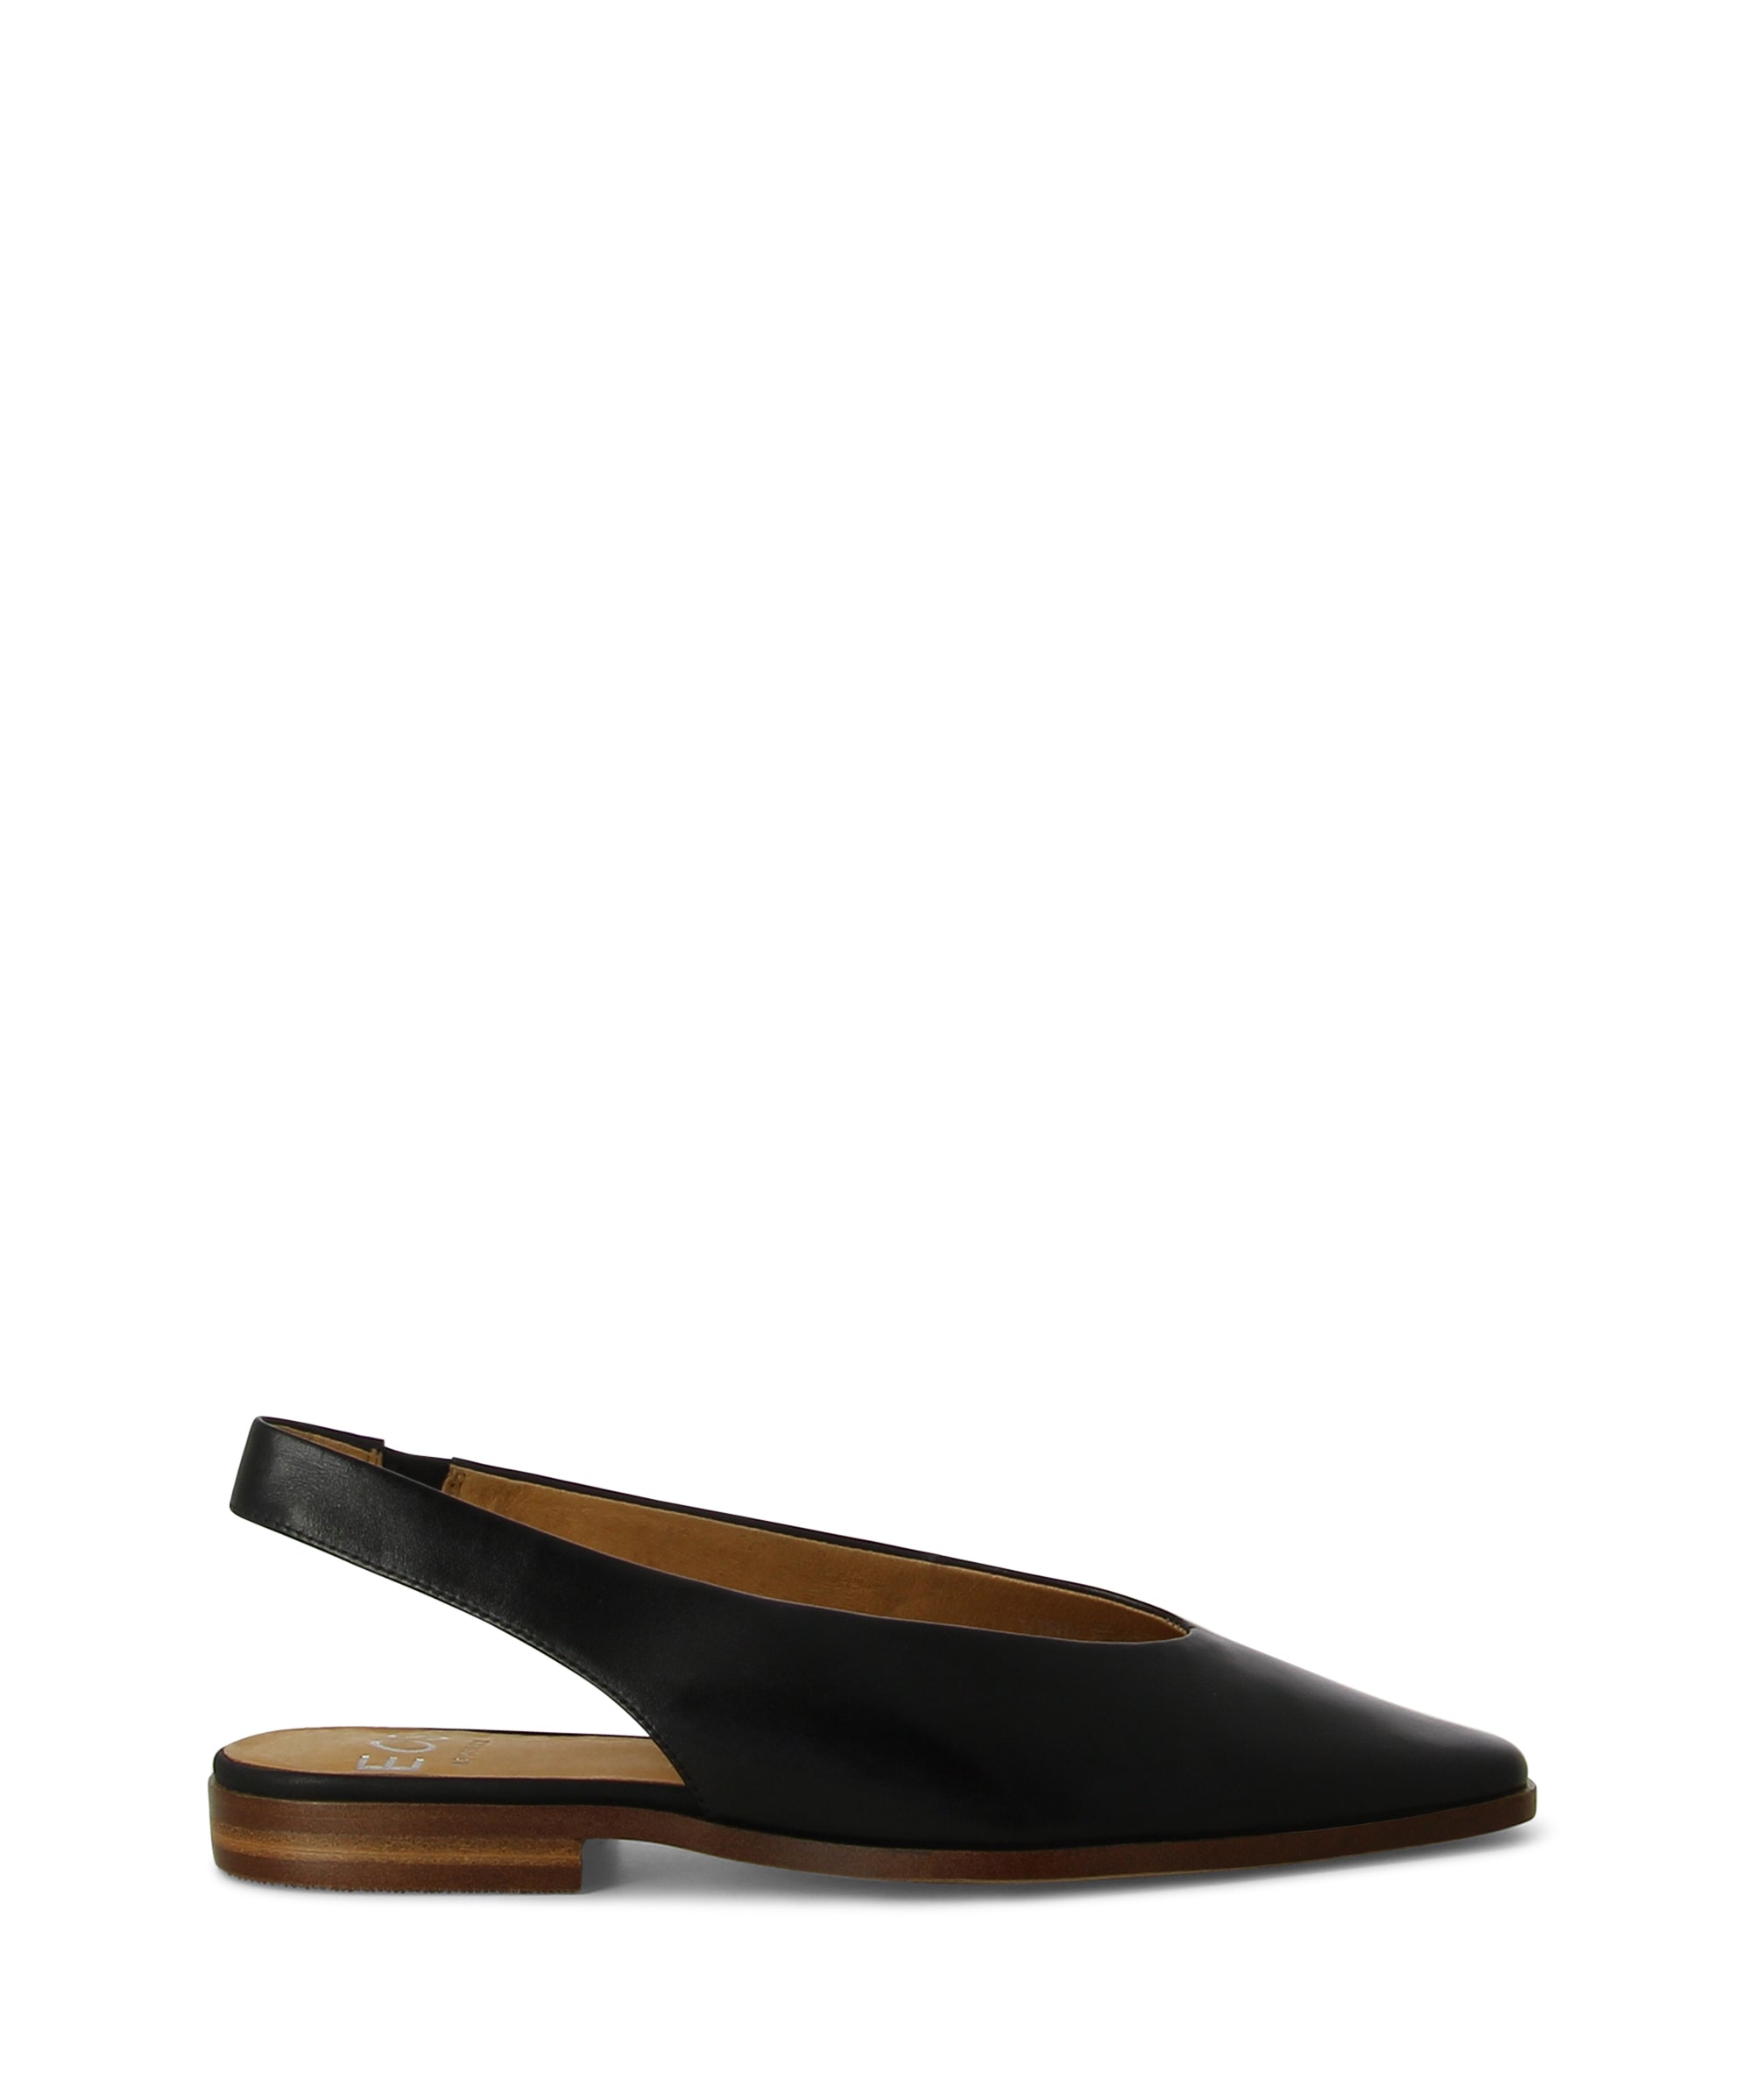 Women's Sandals - Leather Sandals - Platform Sandals - ZOMP SHOEZ